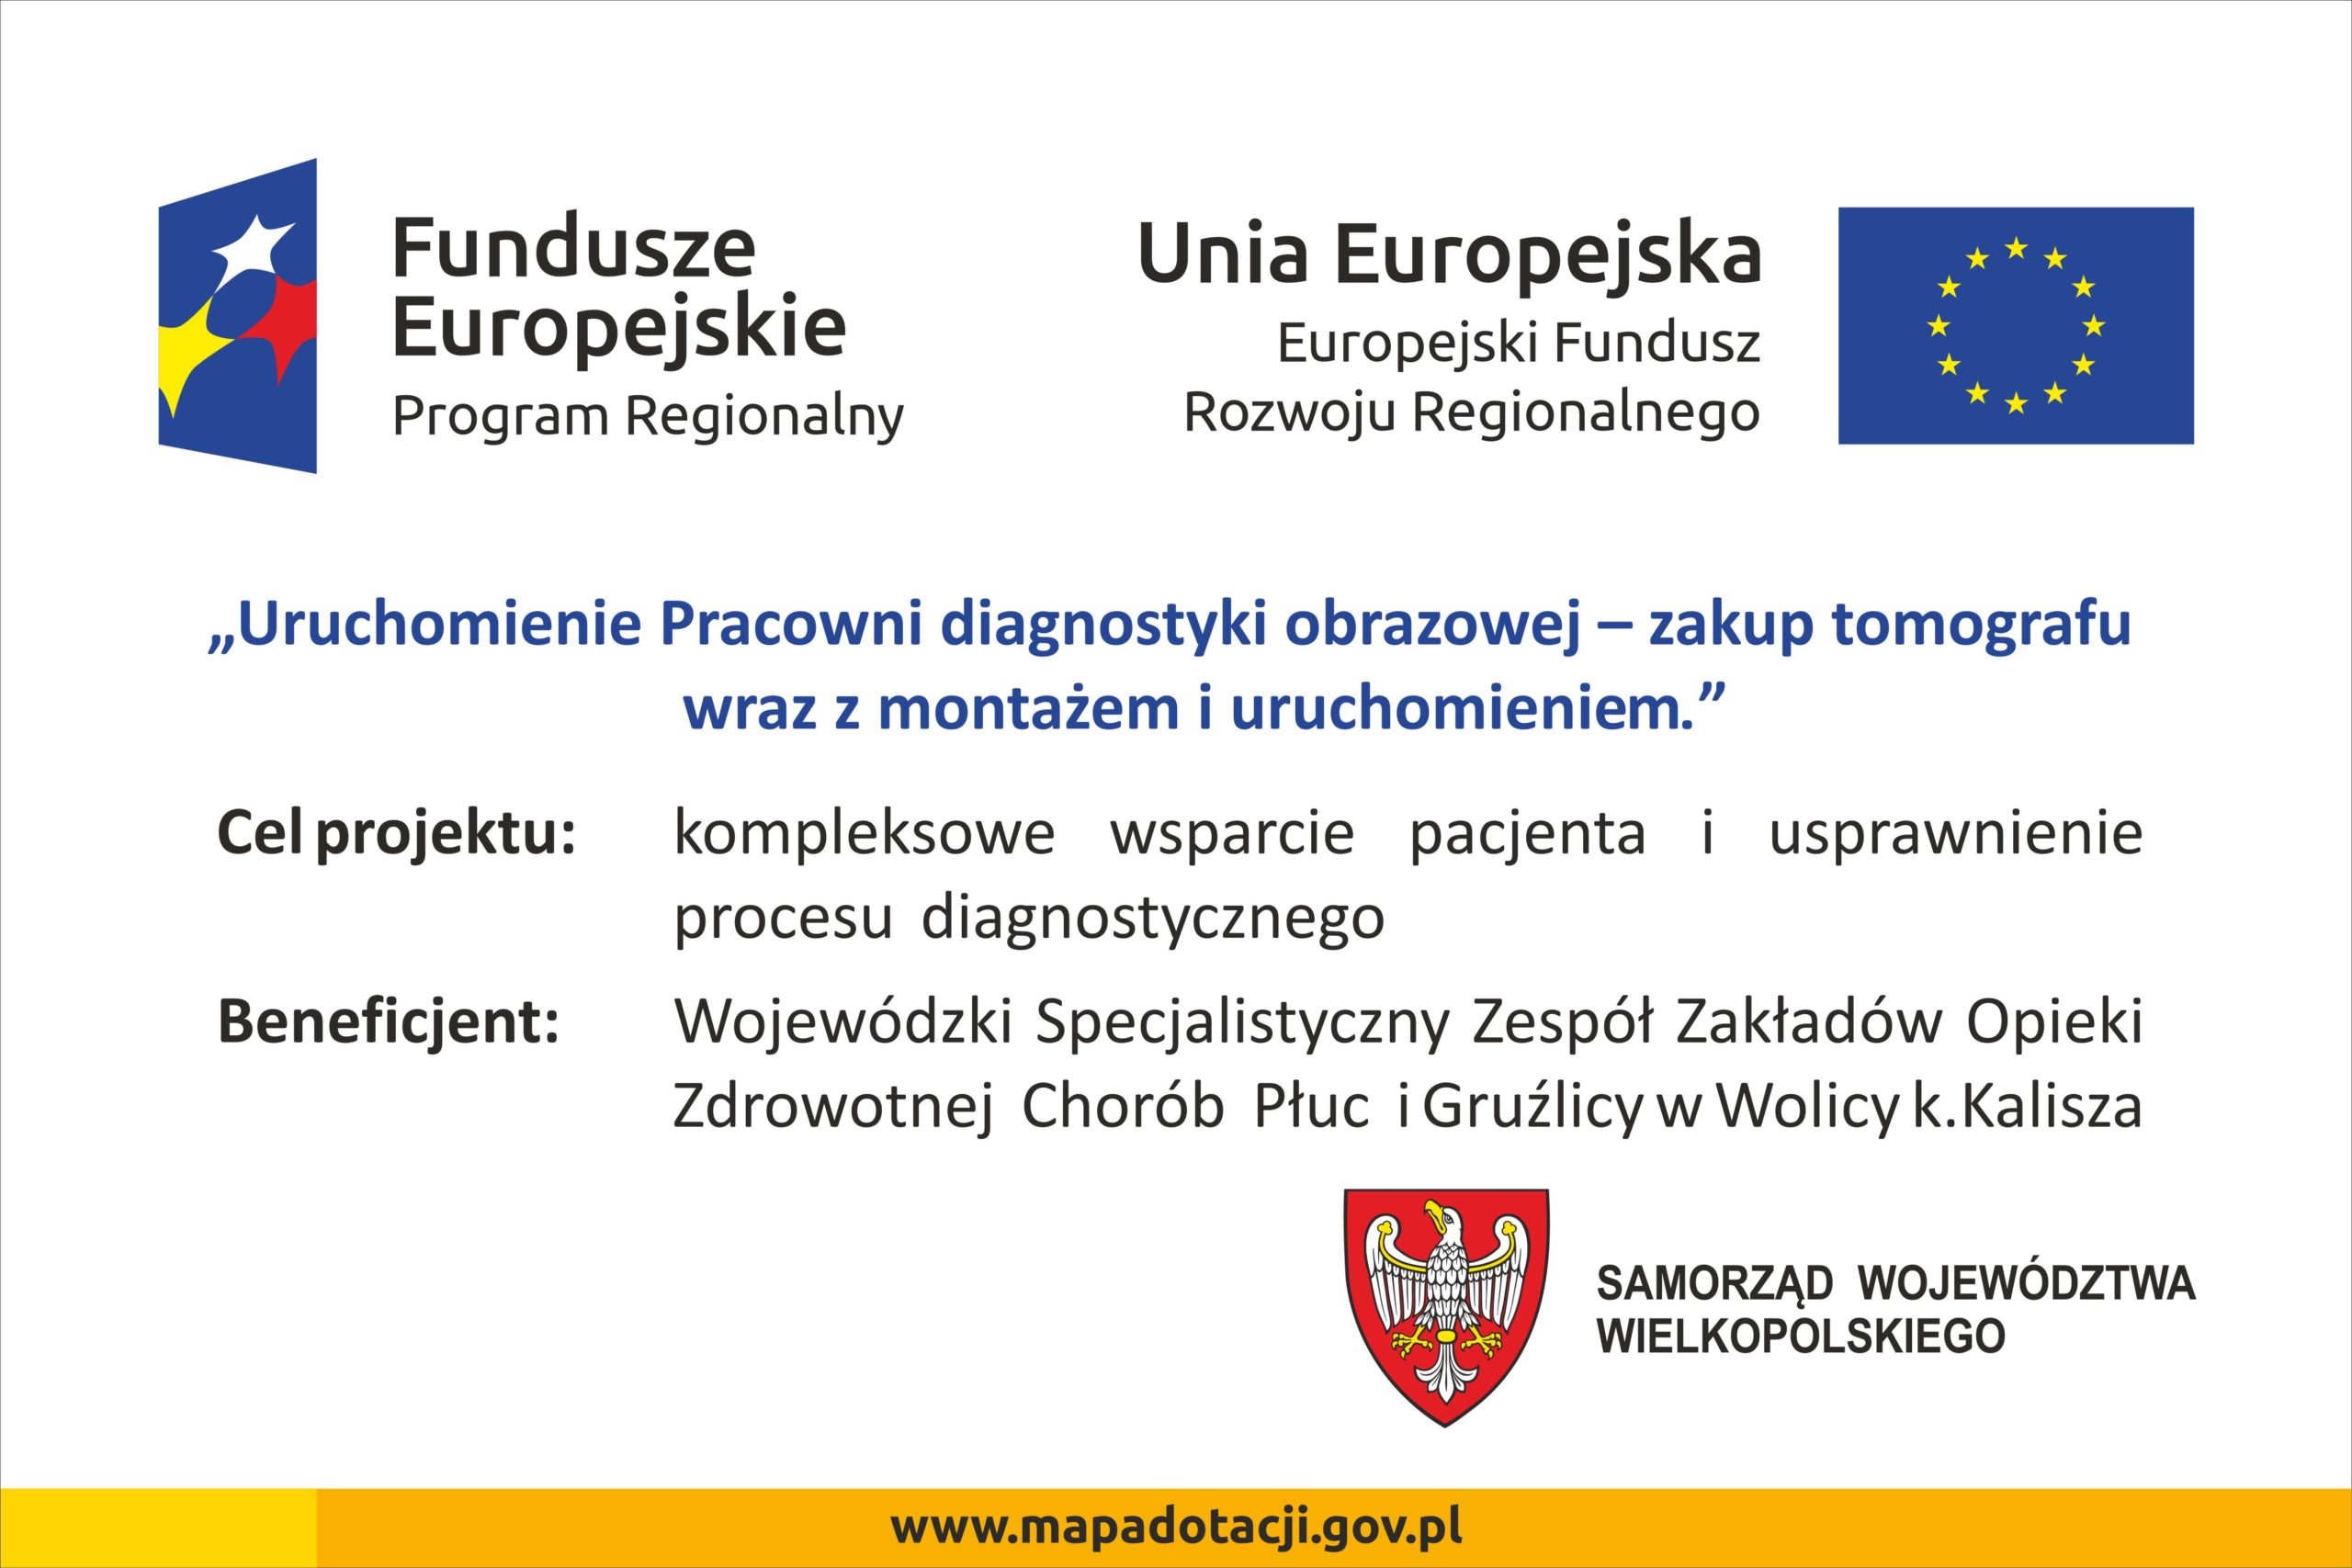 tablica promująca Projekt przedstawiająca logotypy Funduszy Europejskich, flage Unii Europejskiej i Herb Województwa Wielkopolskiego przedstawiający białego orła na czerwonym tle. Po środku tablicy tytuł projektu i cel opisane w informacji o dofinansowaniu